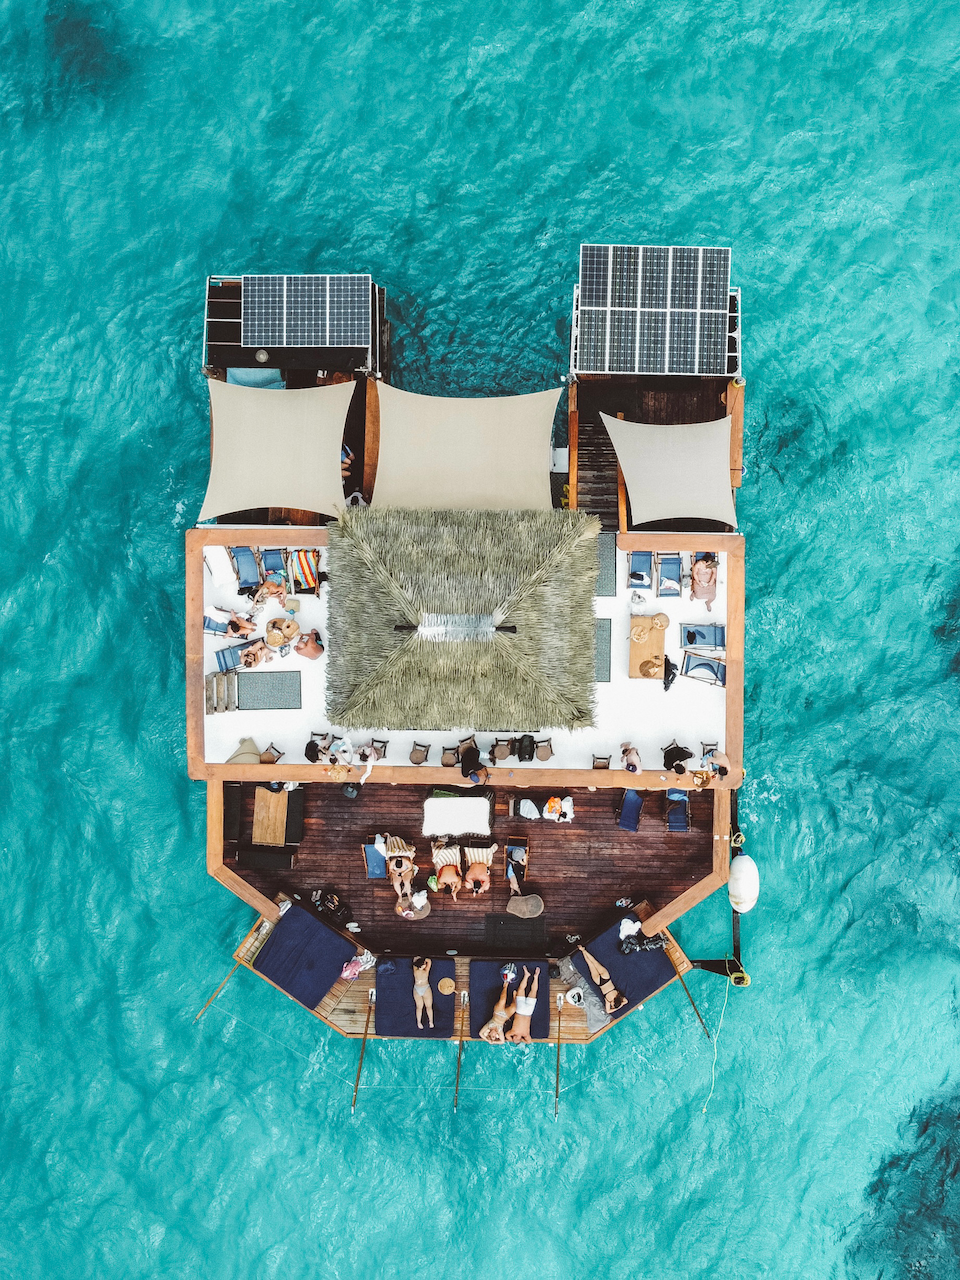 Le bar flottant de Cloud 9 vu de drone - Mamanucas - Îles Fidji